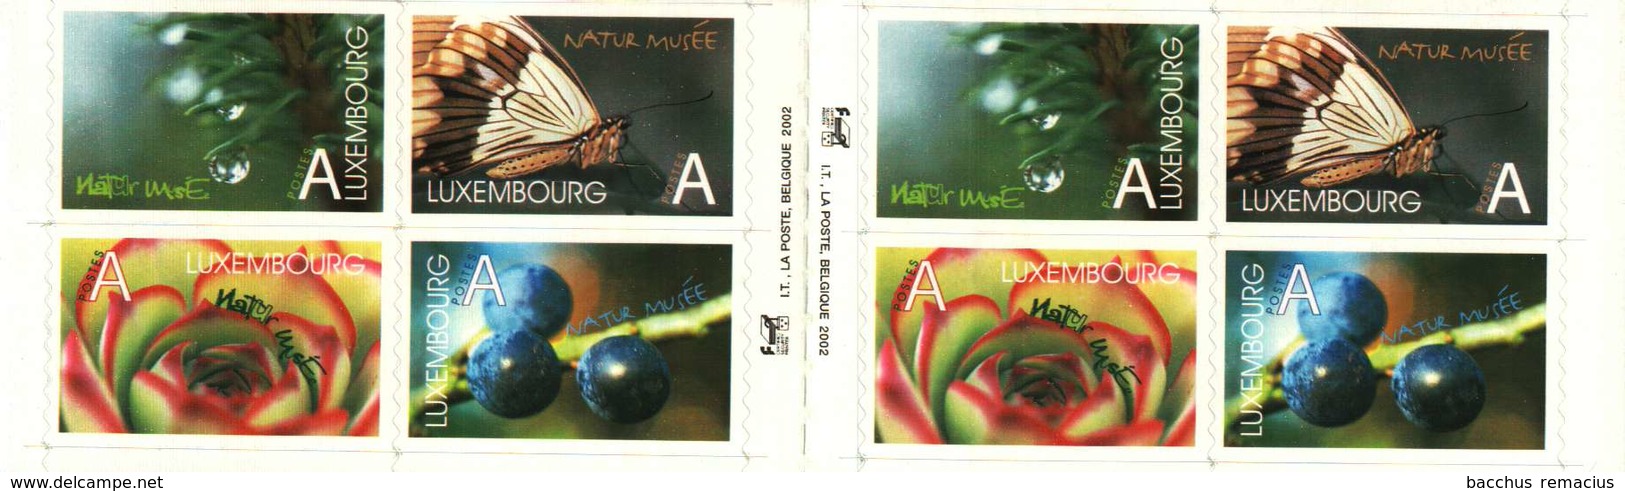 Luxembourg-Grund Carnet De 8 Timbres "A"  Autocollants  Musée D'Histoire Naturelle Naturmuseum 2002 - Booklets